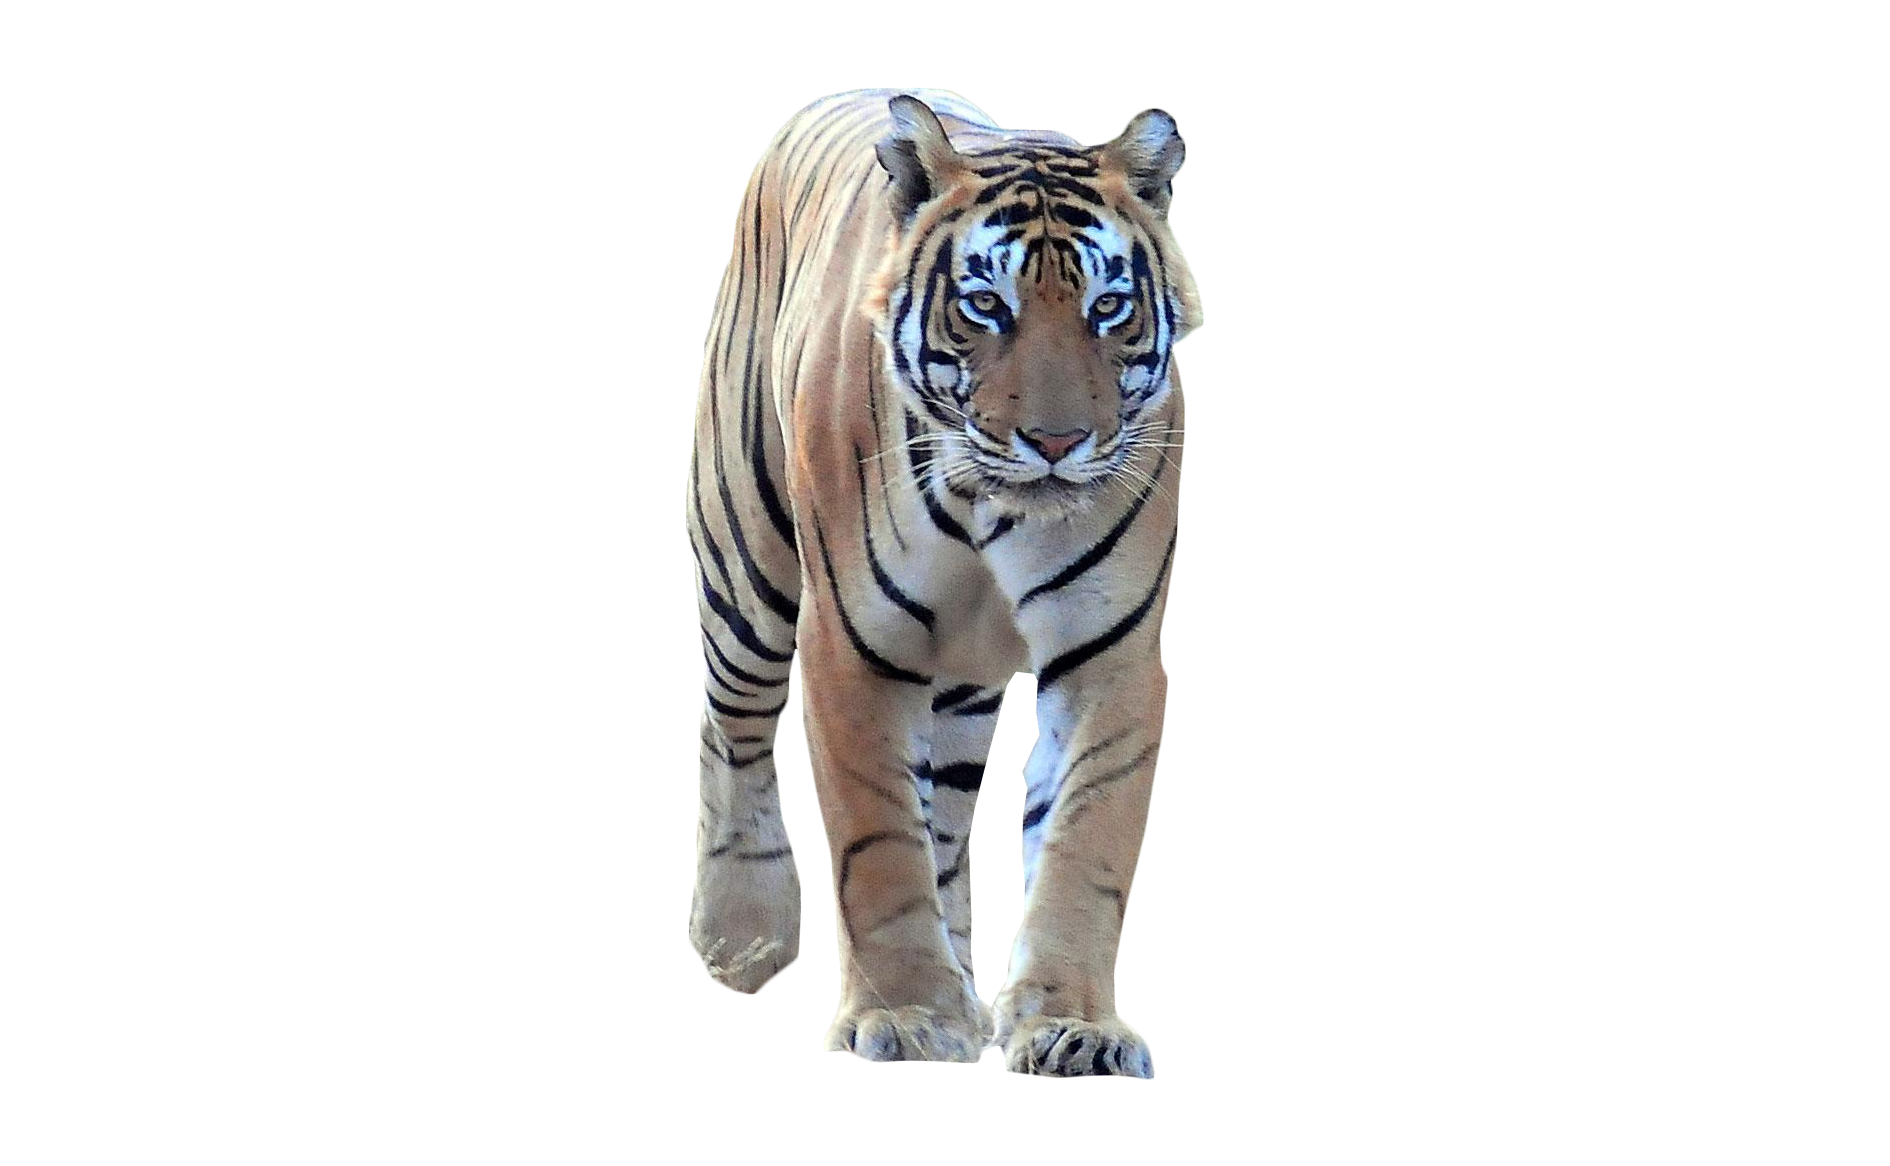 Tiger Walking Frontal Png Image Purepng Free Transparent Cc0 Png